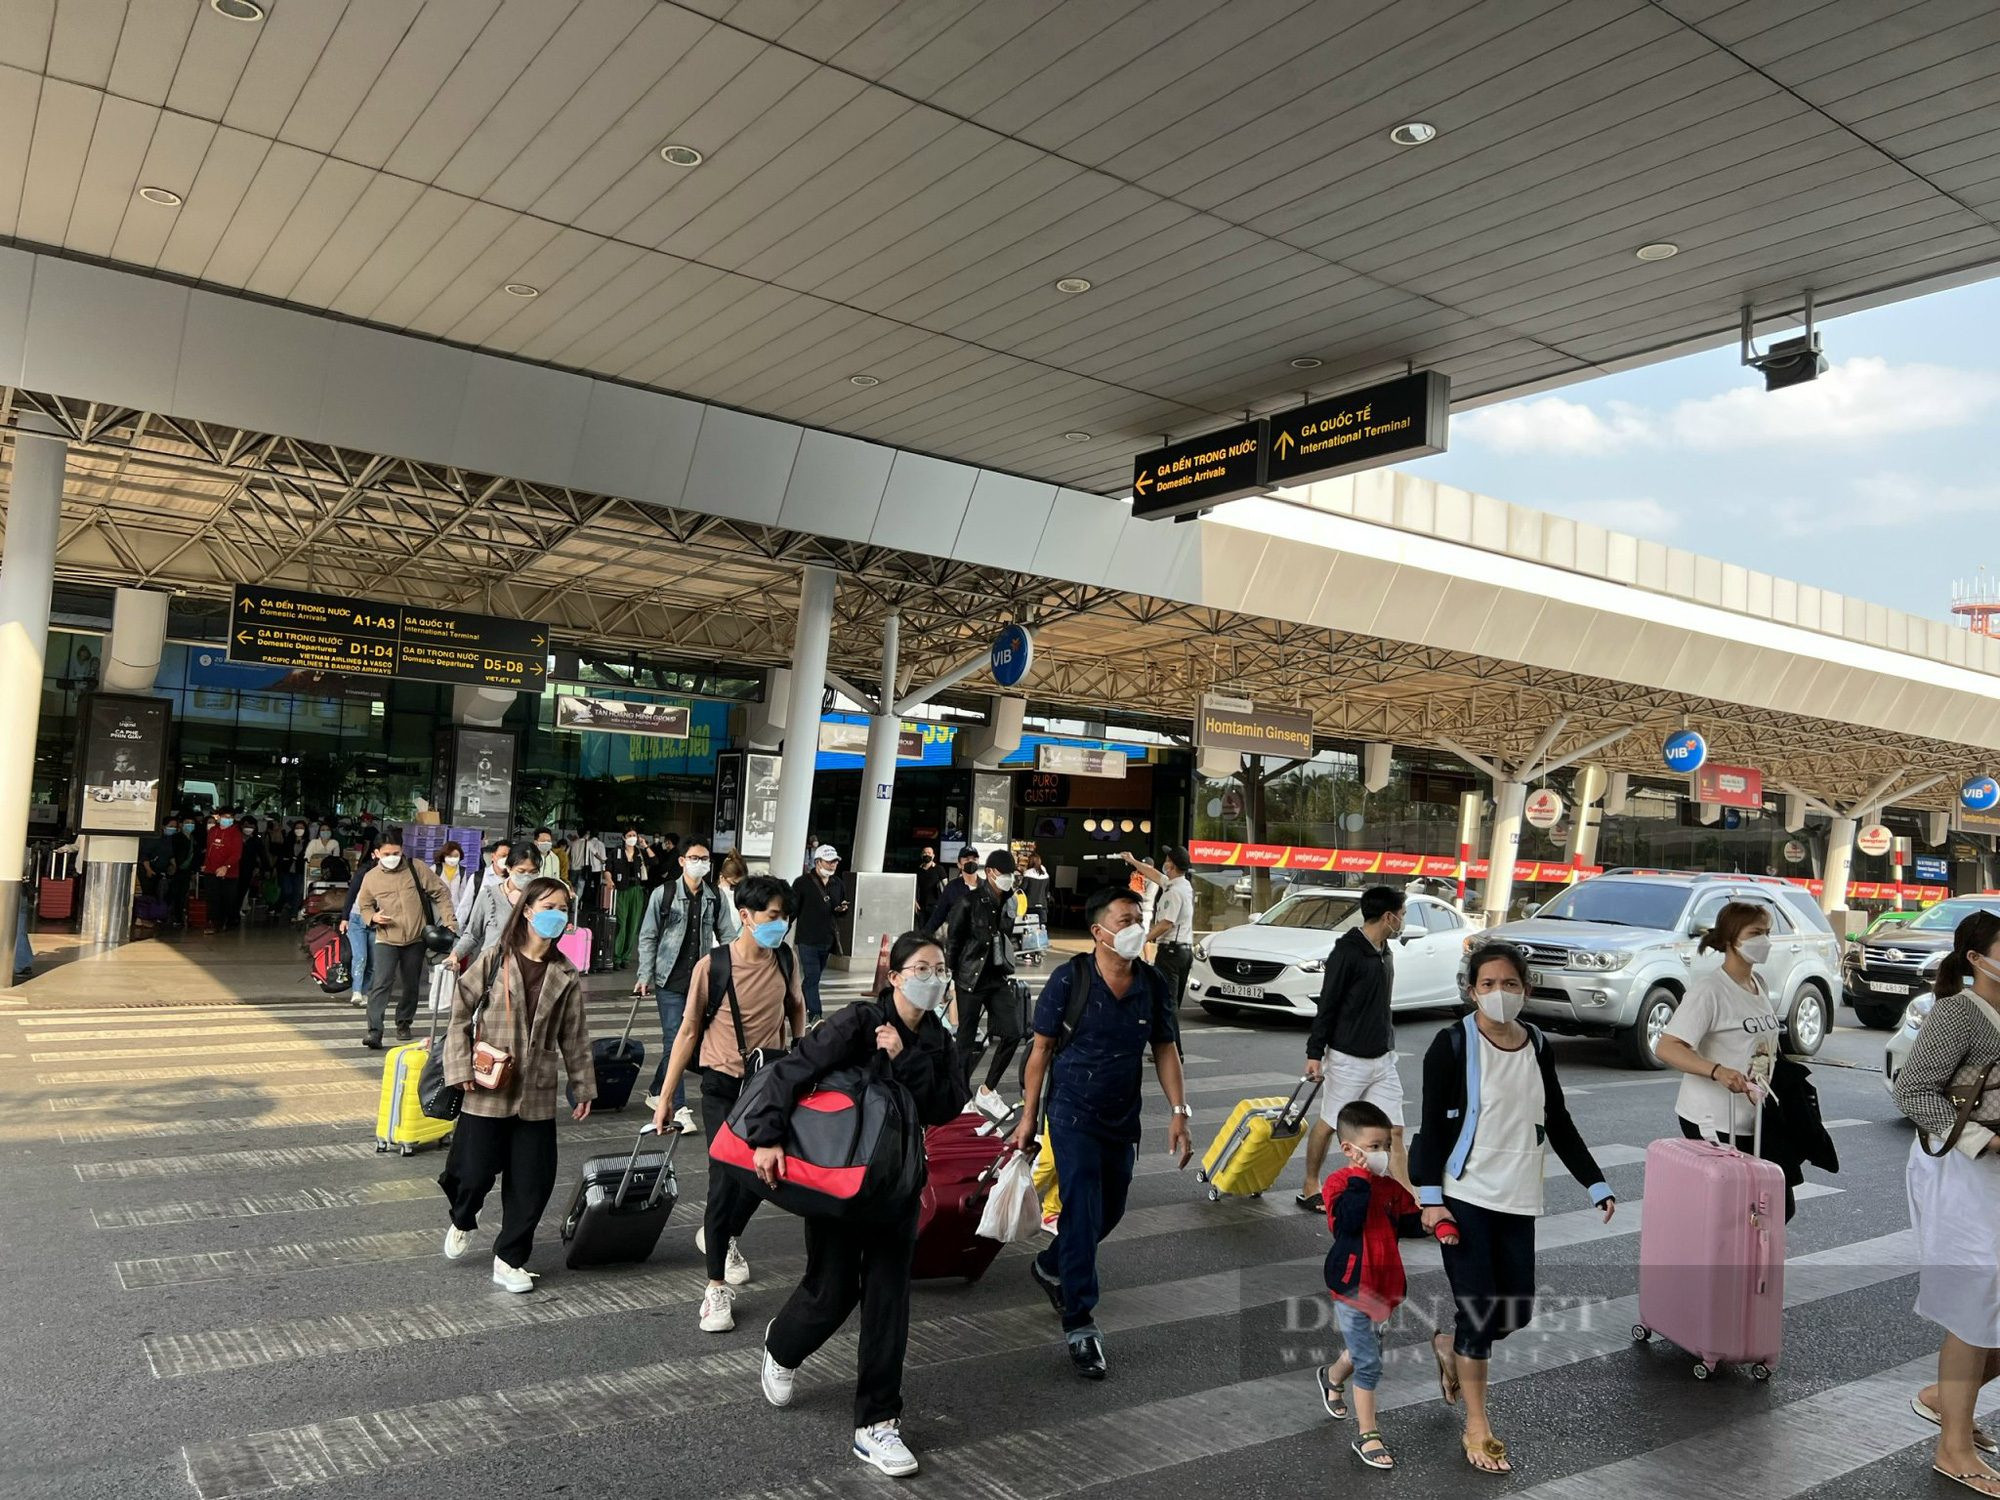 Sân bay Tân Sơn Nhất 'hạ nhiệt', dòng người thong thả rời đi - Ảnh 2.